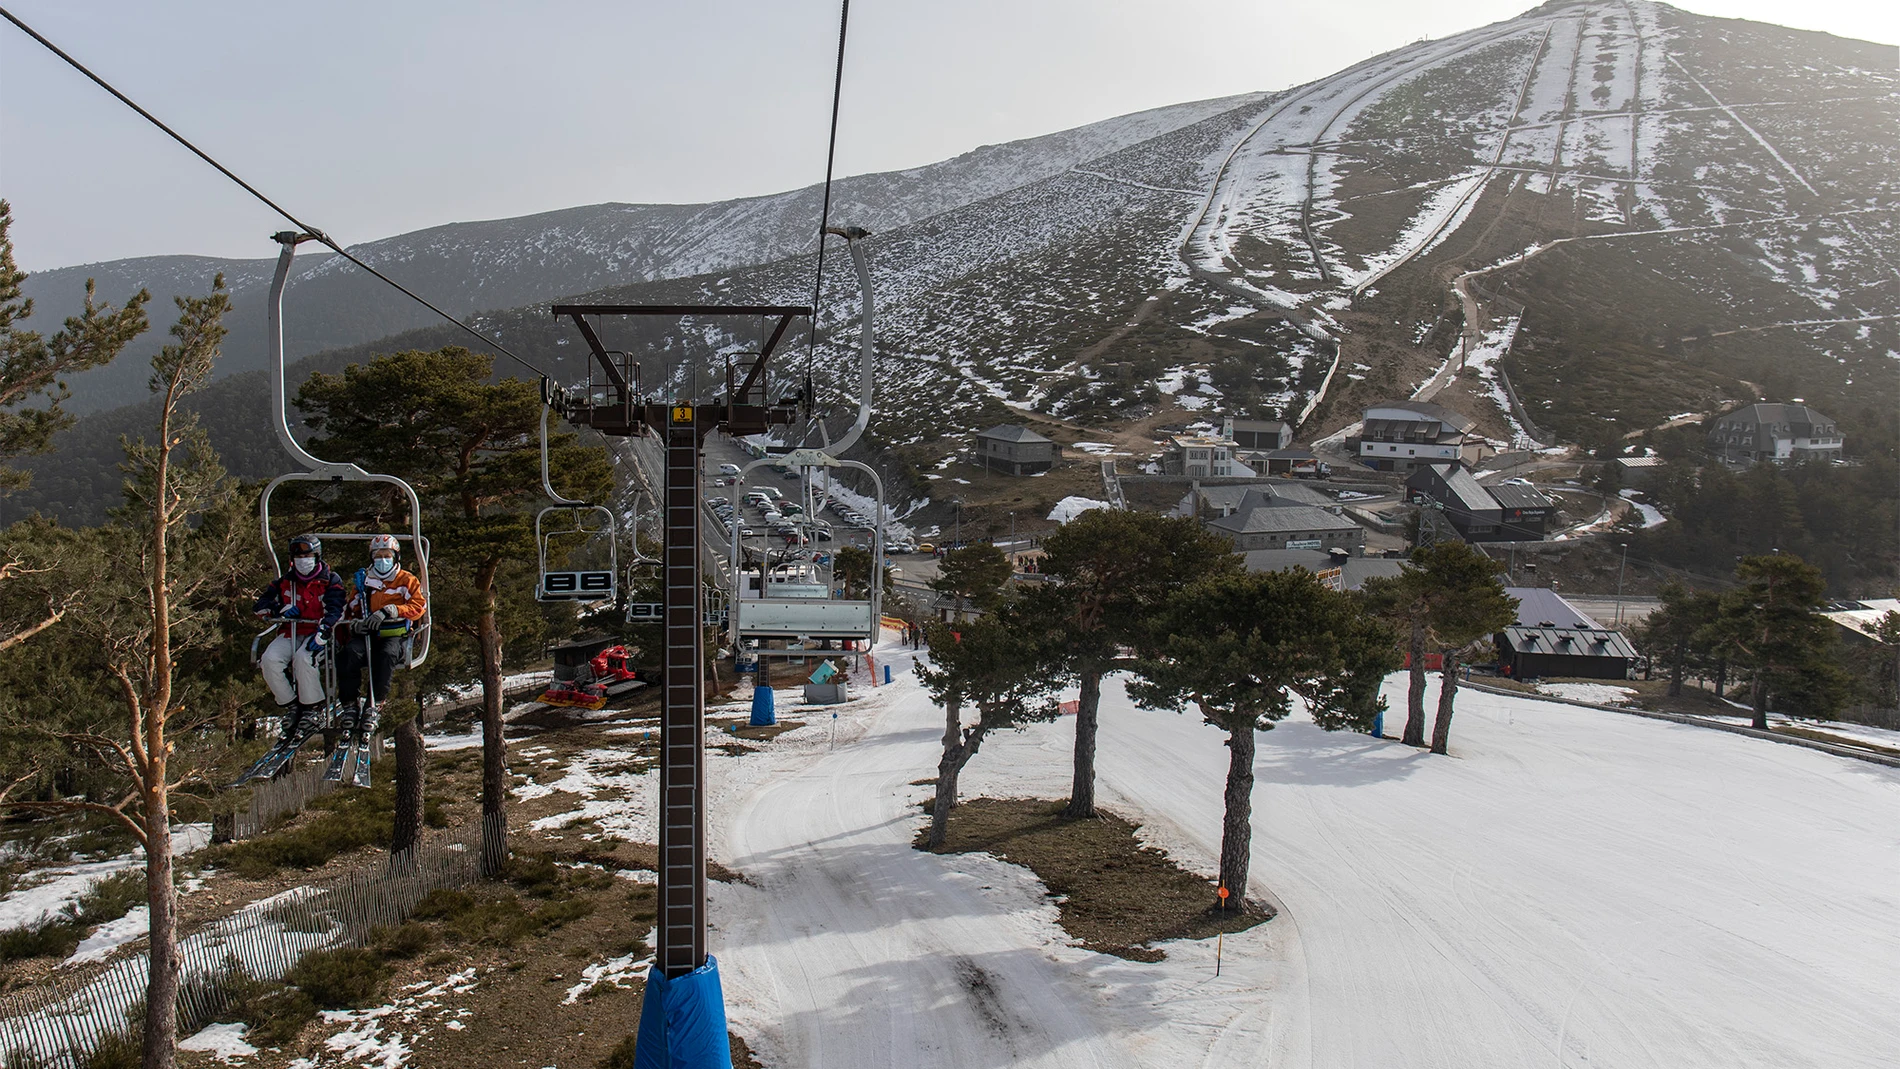 Vista general de telesillas y una de las pistas de la estación de esquí de Navacerrada, en Madrid